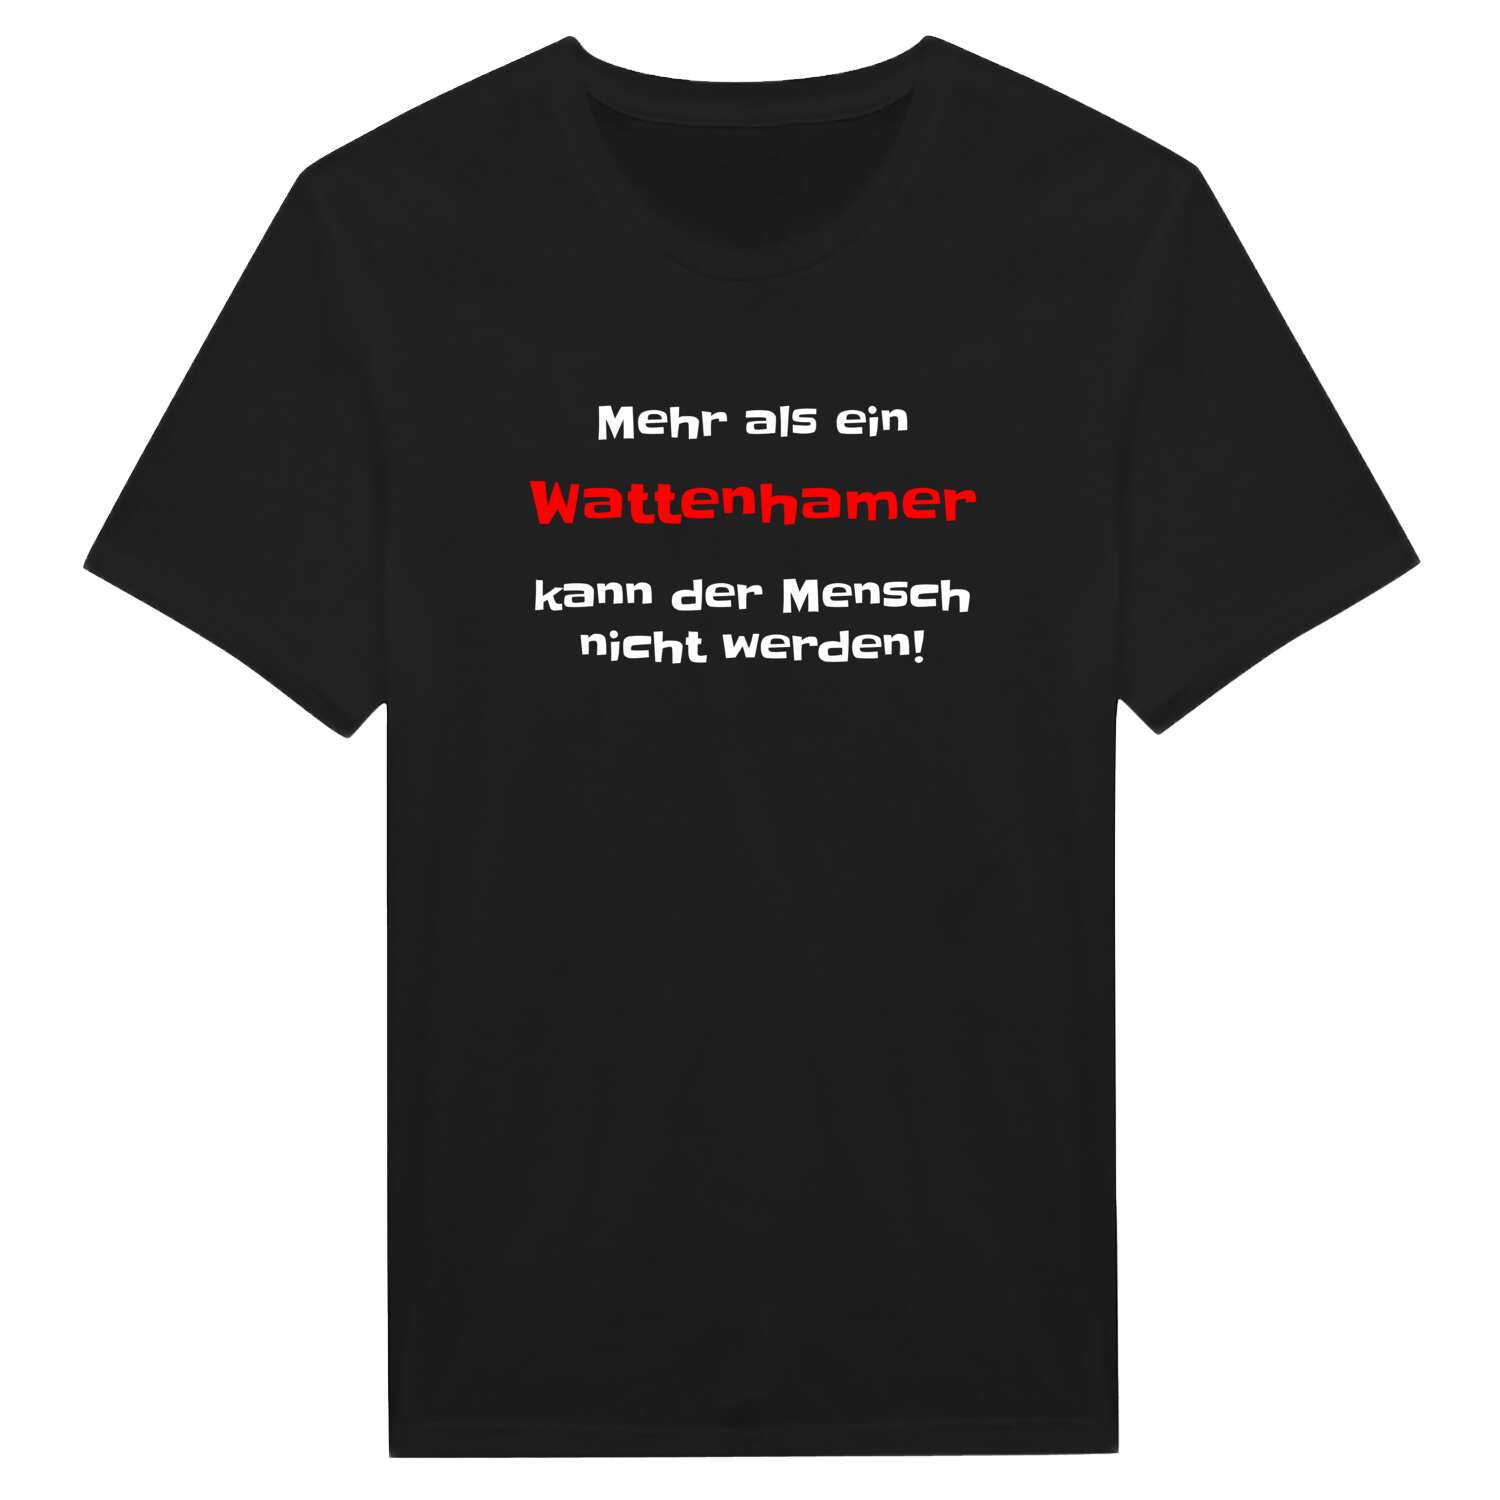 Wattenham T-Shirt »Mehr als ein«